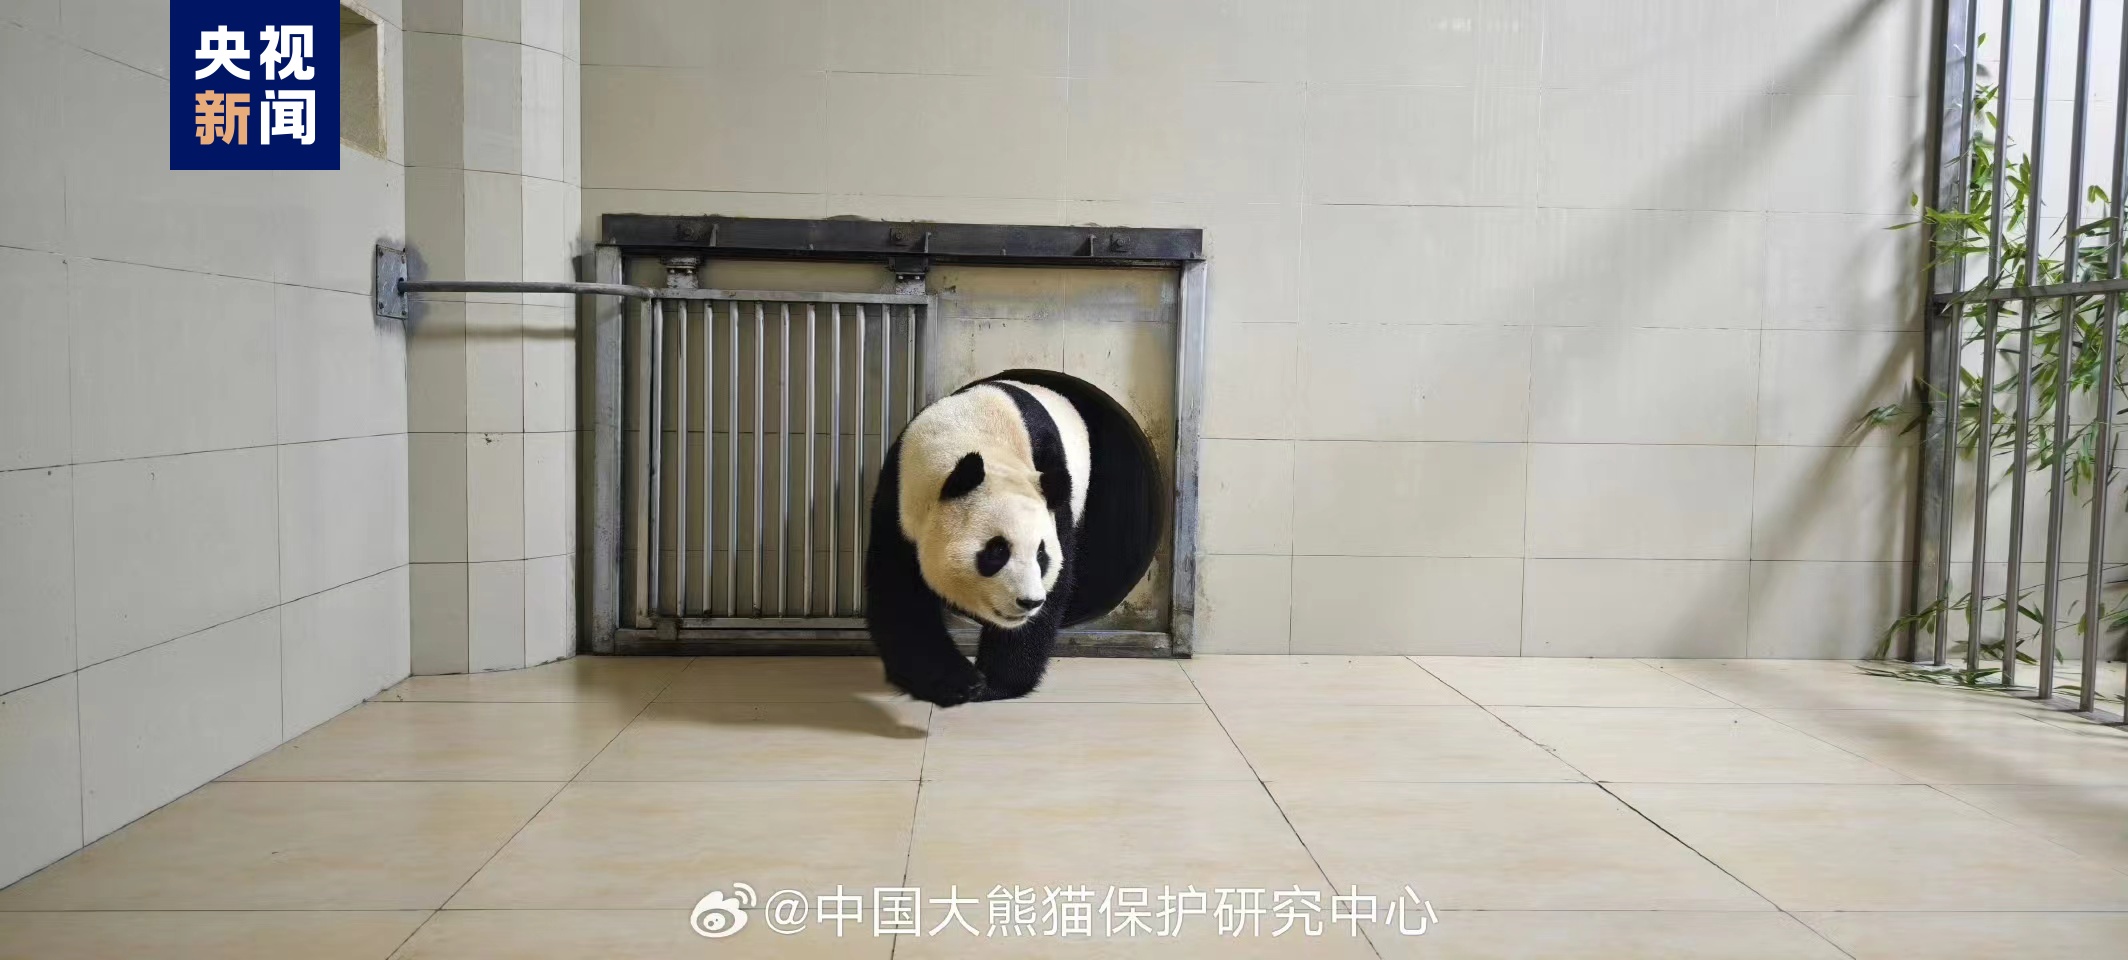 大熊猫“福宝”已胜利抵家 状况卓着